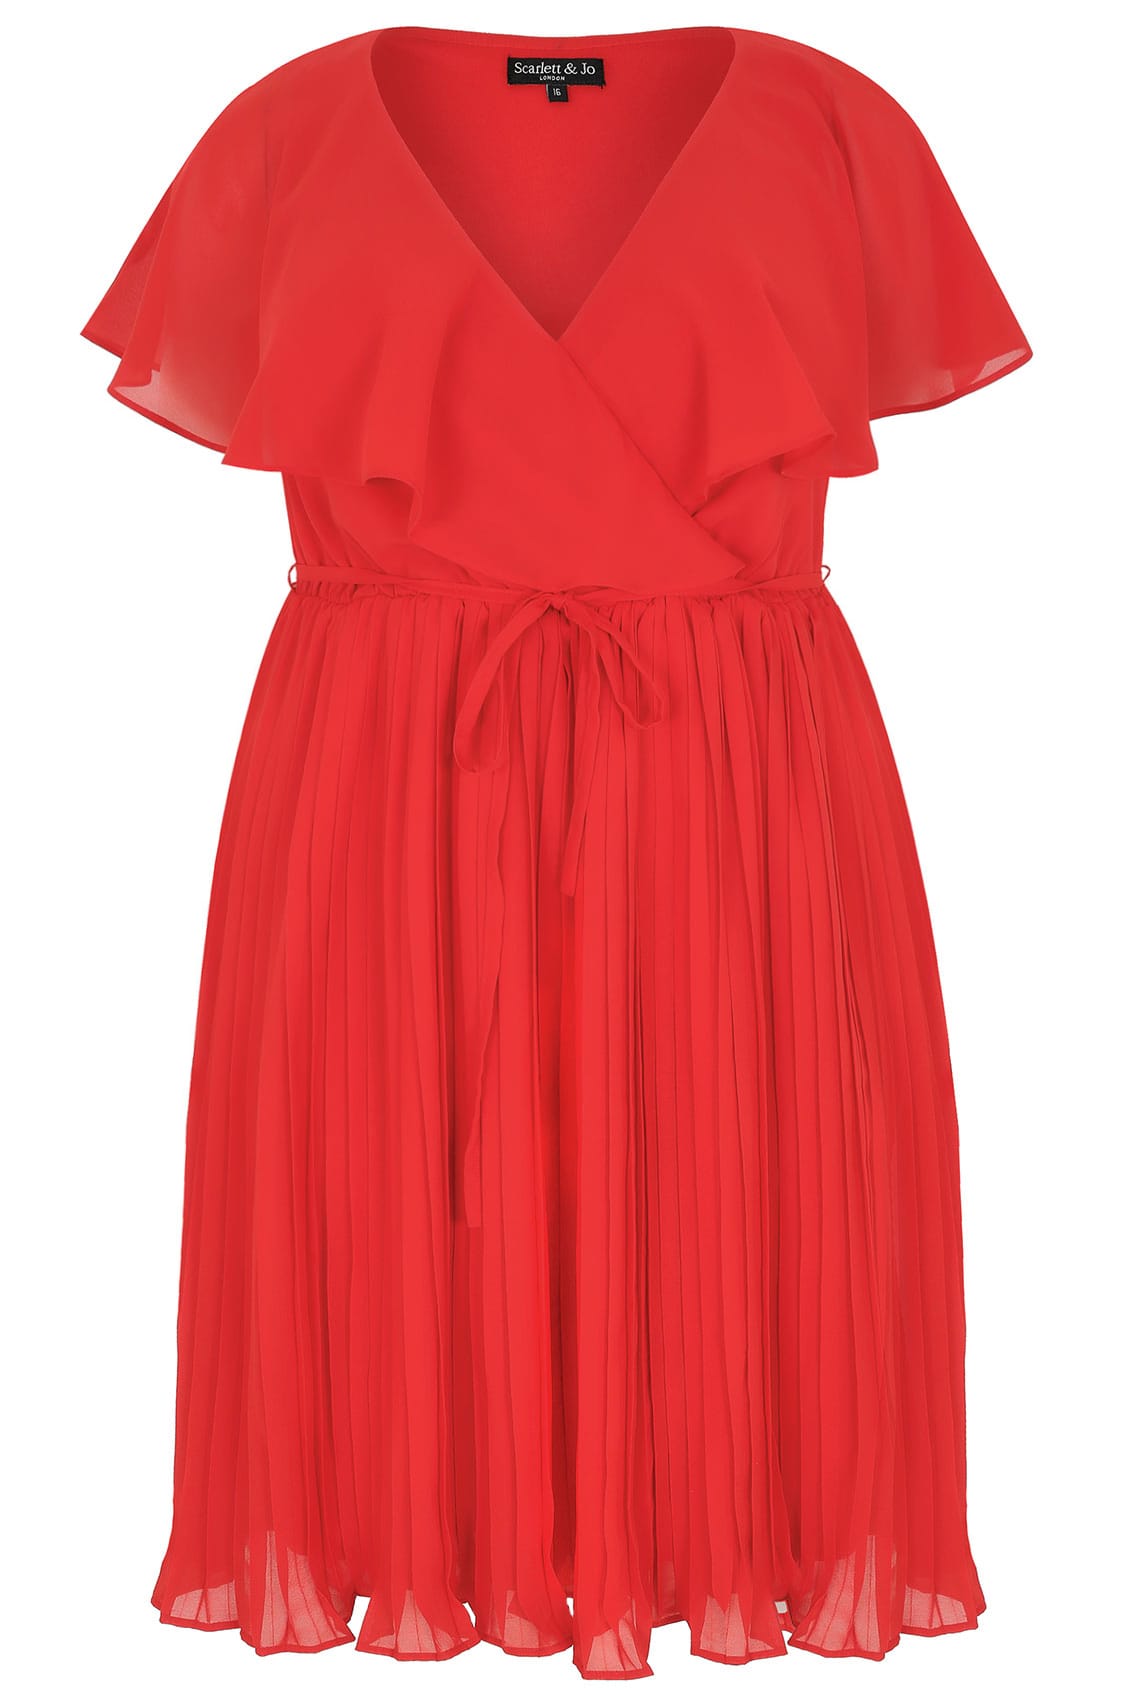 SCARLETT & JO Red Chiffon Pleat Skirt Midi Dress With Cape Detail plus ...